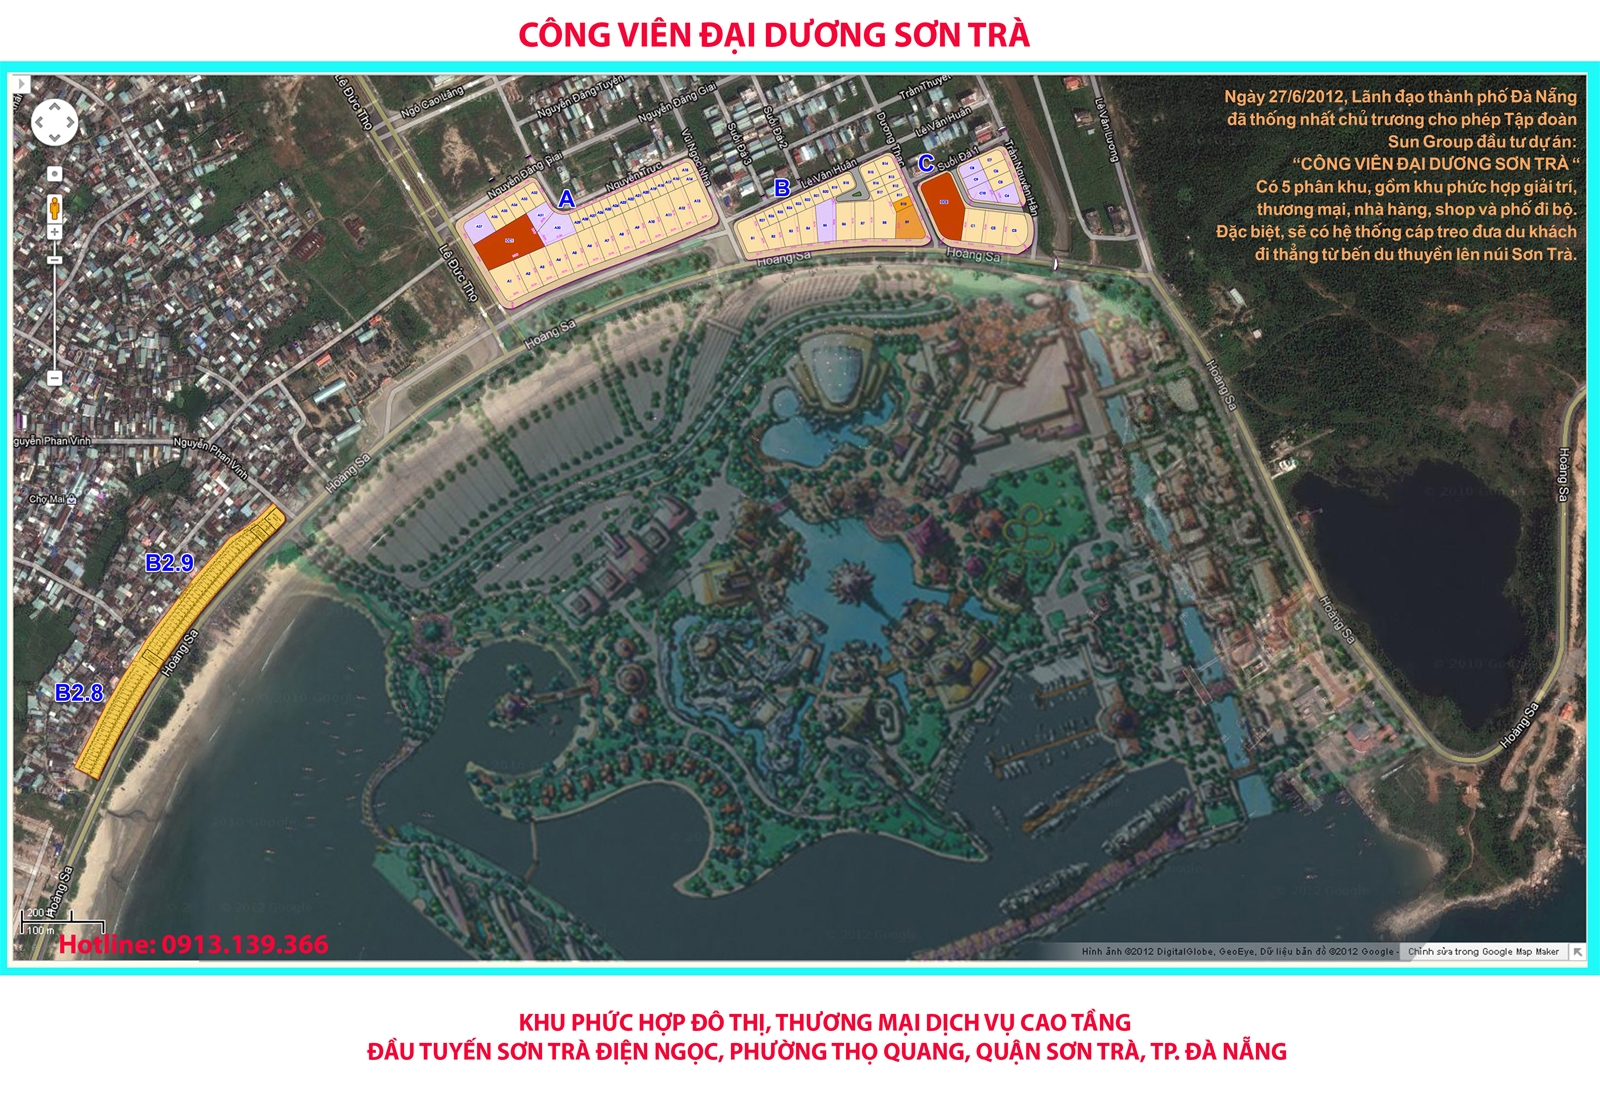 Chuyển nhượng QSD đất khu đầu tuyến Sơn Trà mặt tiền đường Võ Nguyên Giáp Đà Nẵng